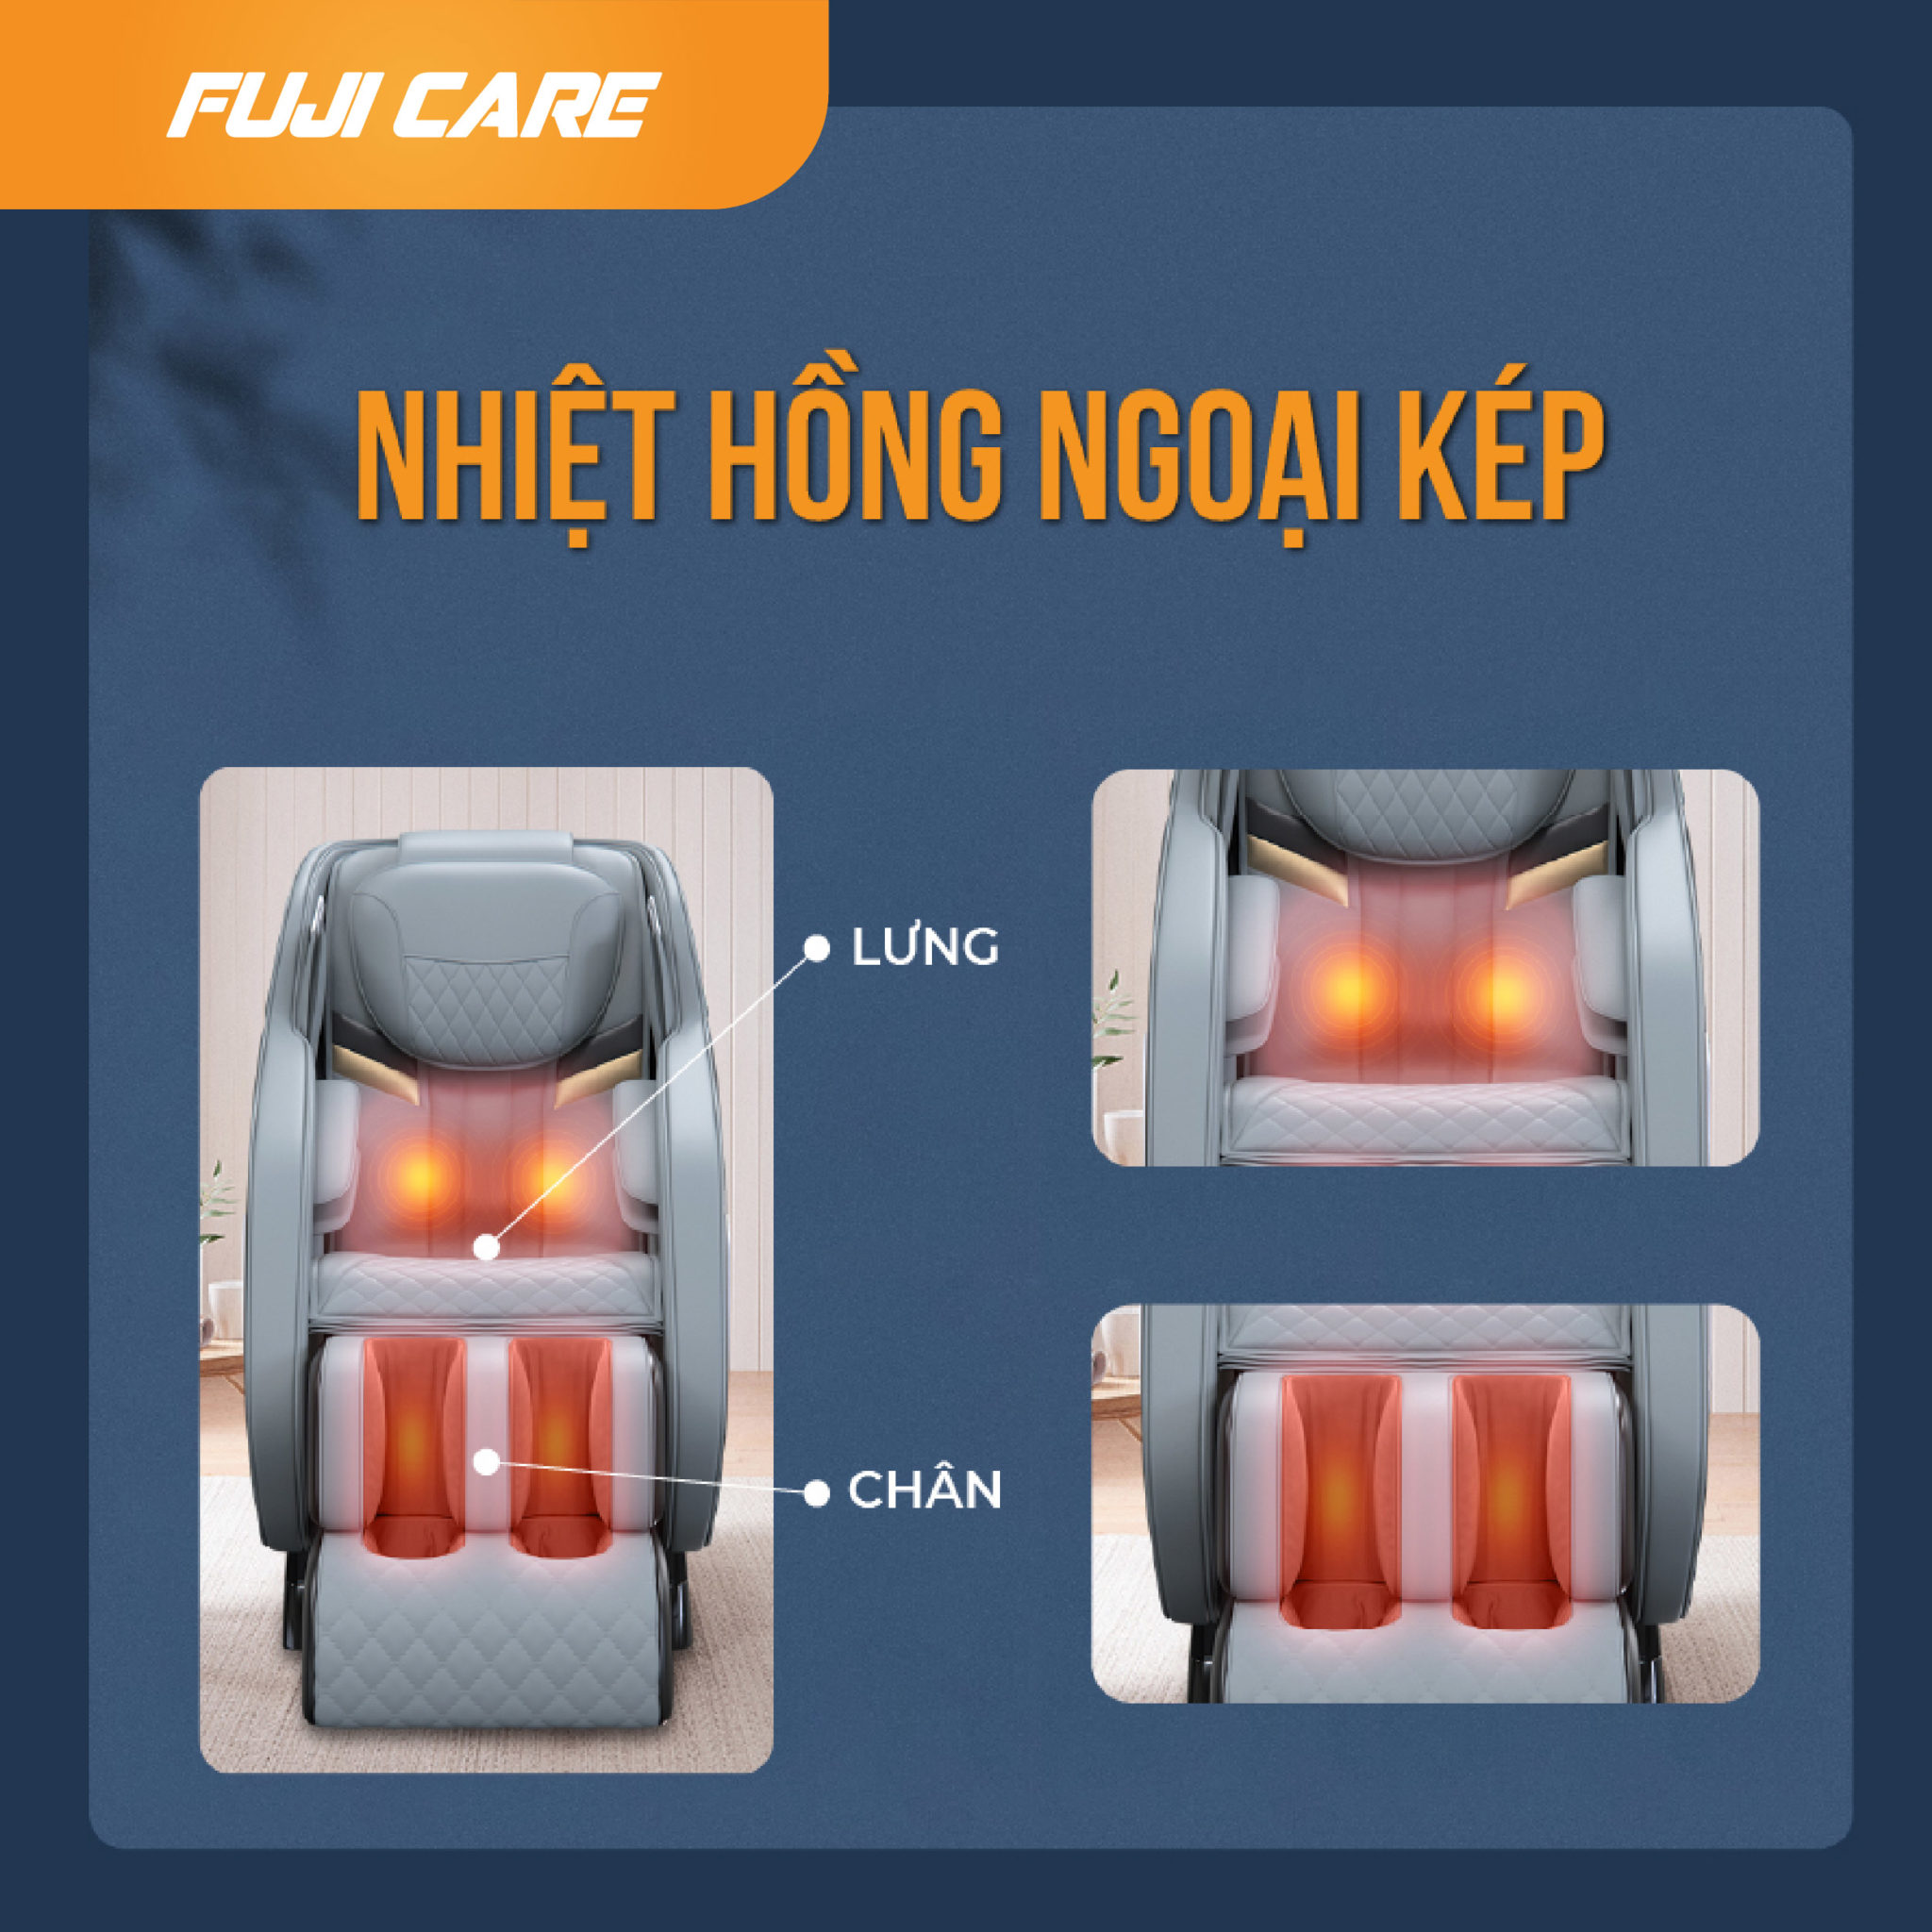 Mỗi ghế massage được trang bị nhiều chức năng và cấu tạo khác nhau